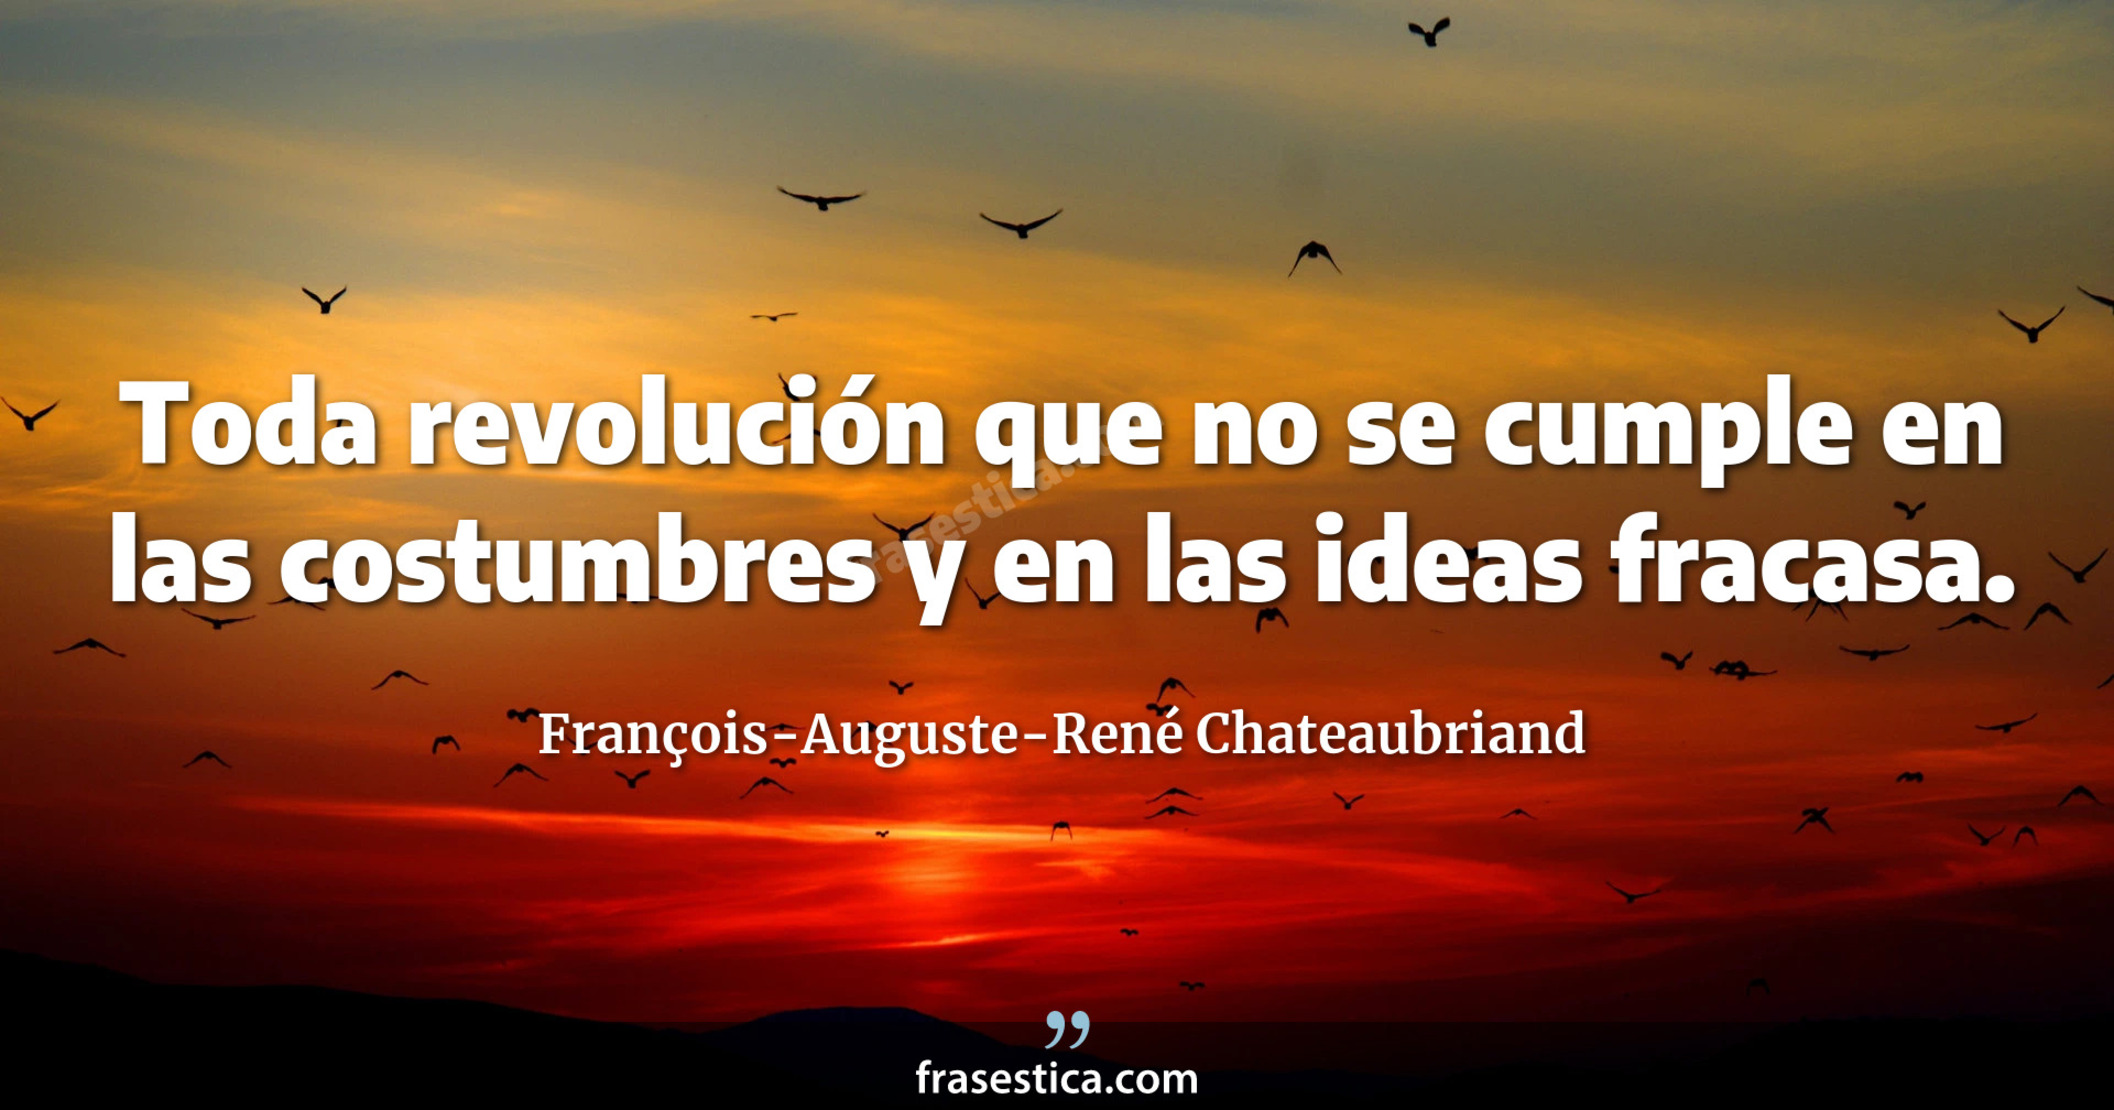 Toda revolución que no se cumple en las costumbres y en las ideas fracasa. - François-Auguste-René Chateaubriand